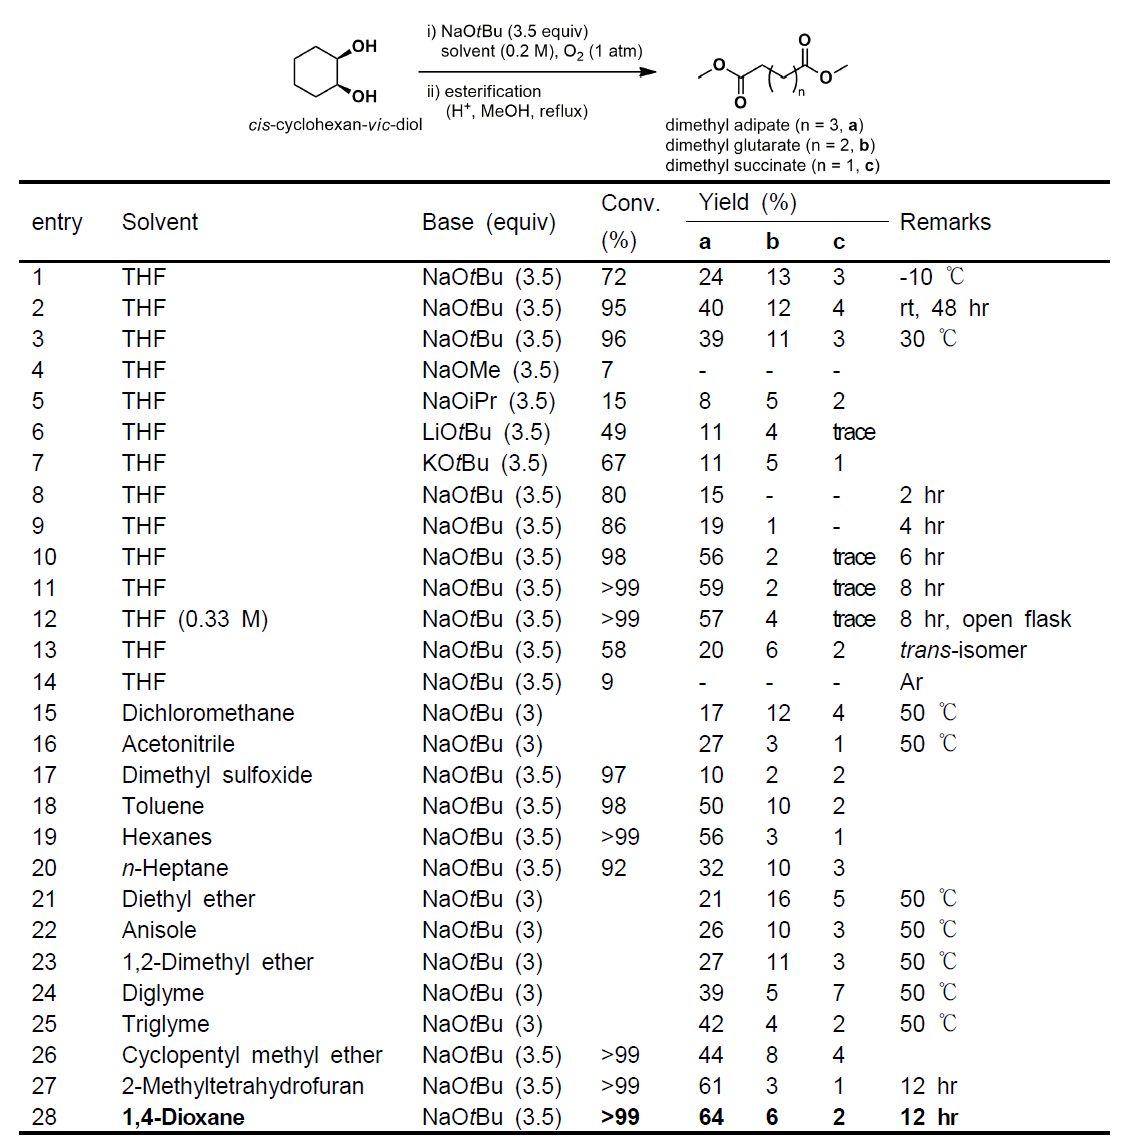 cis-사이클로헥세인-1,2-다이올의 온도와 용매에 따른 반응성 비교